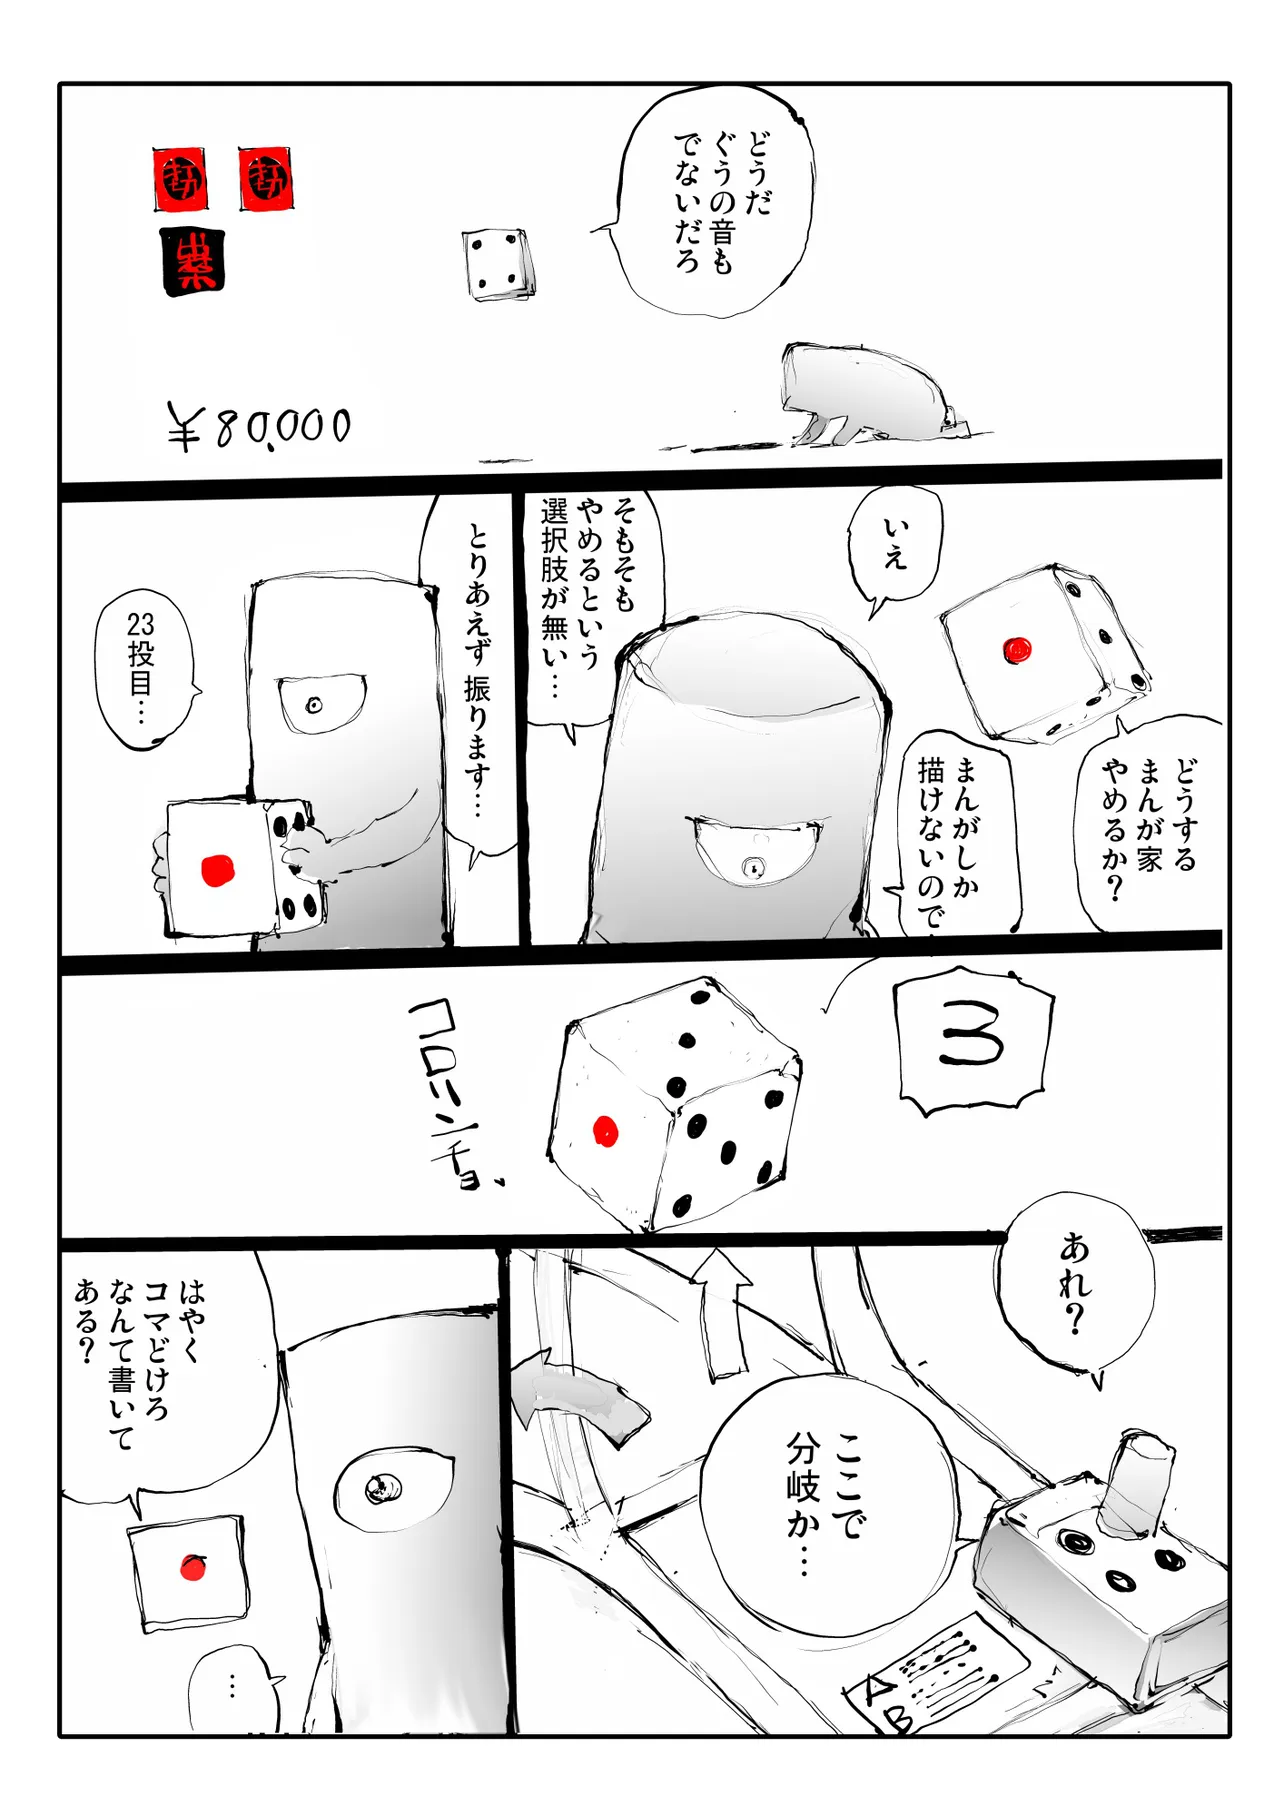 『まんが家すごろく』(29/48)